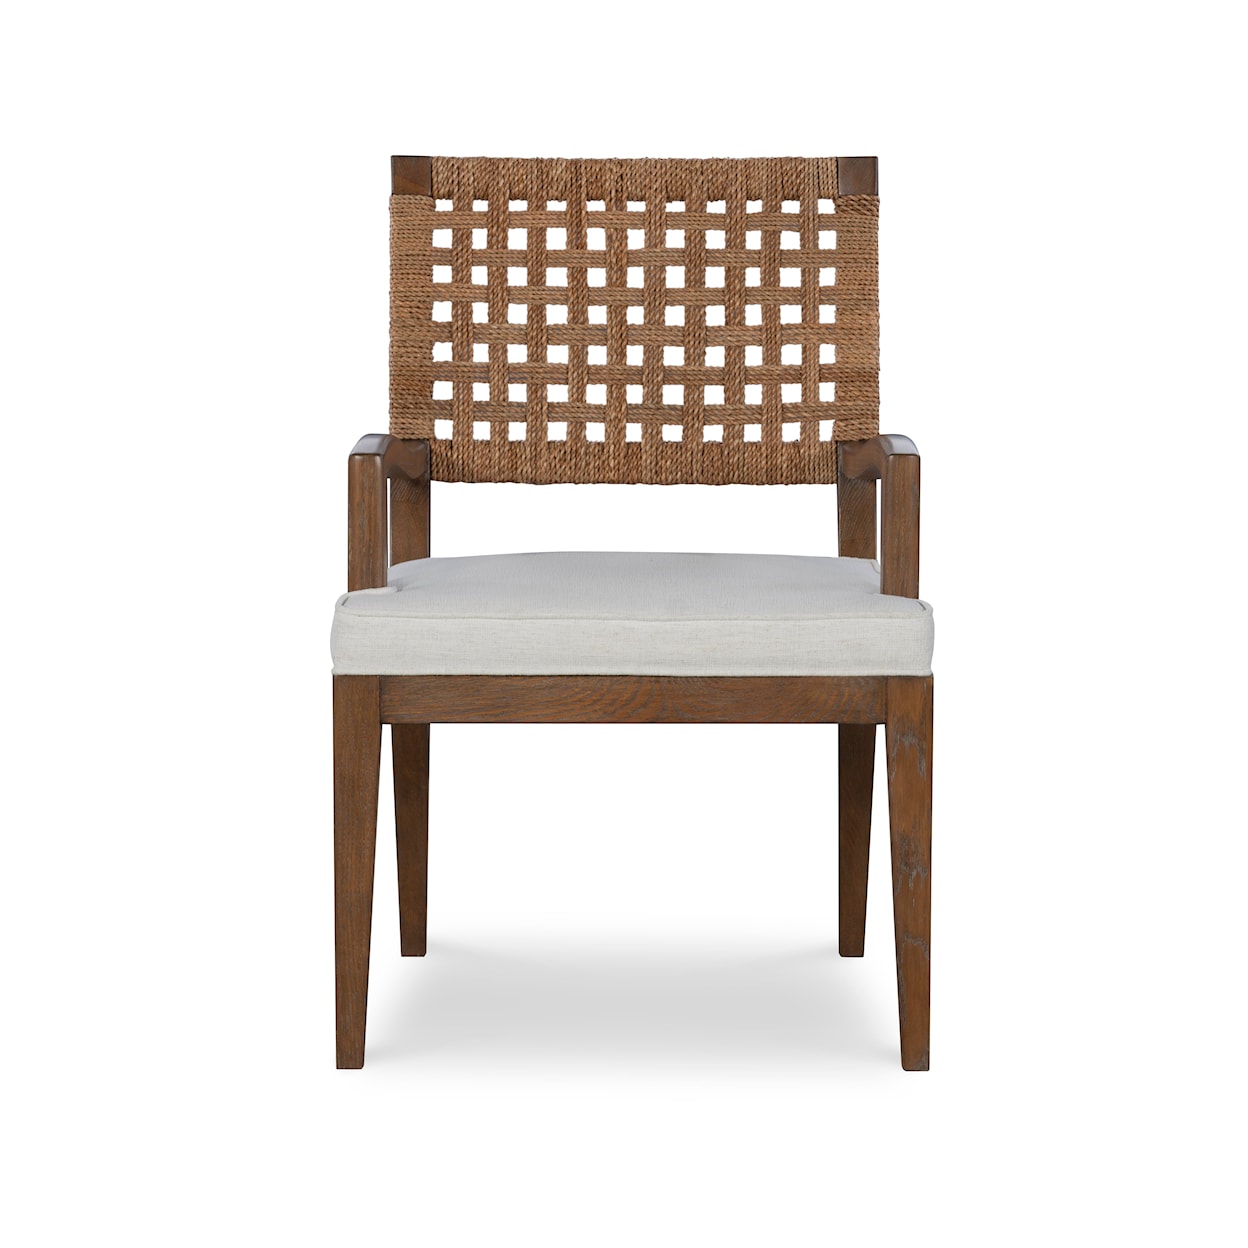 Century Mesa Arm Chair